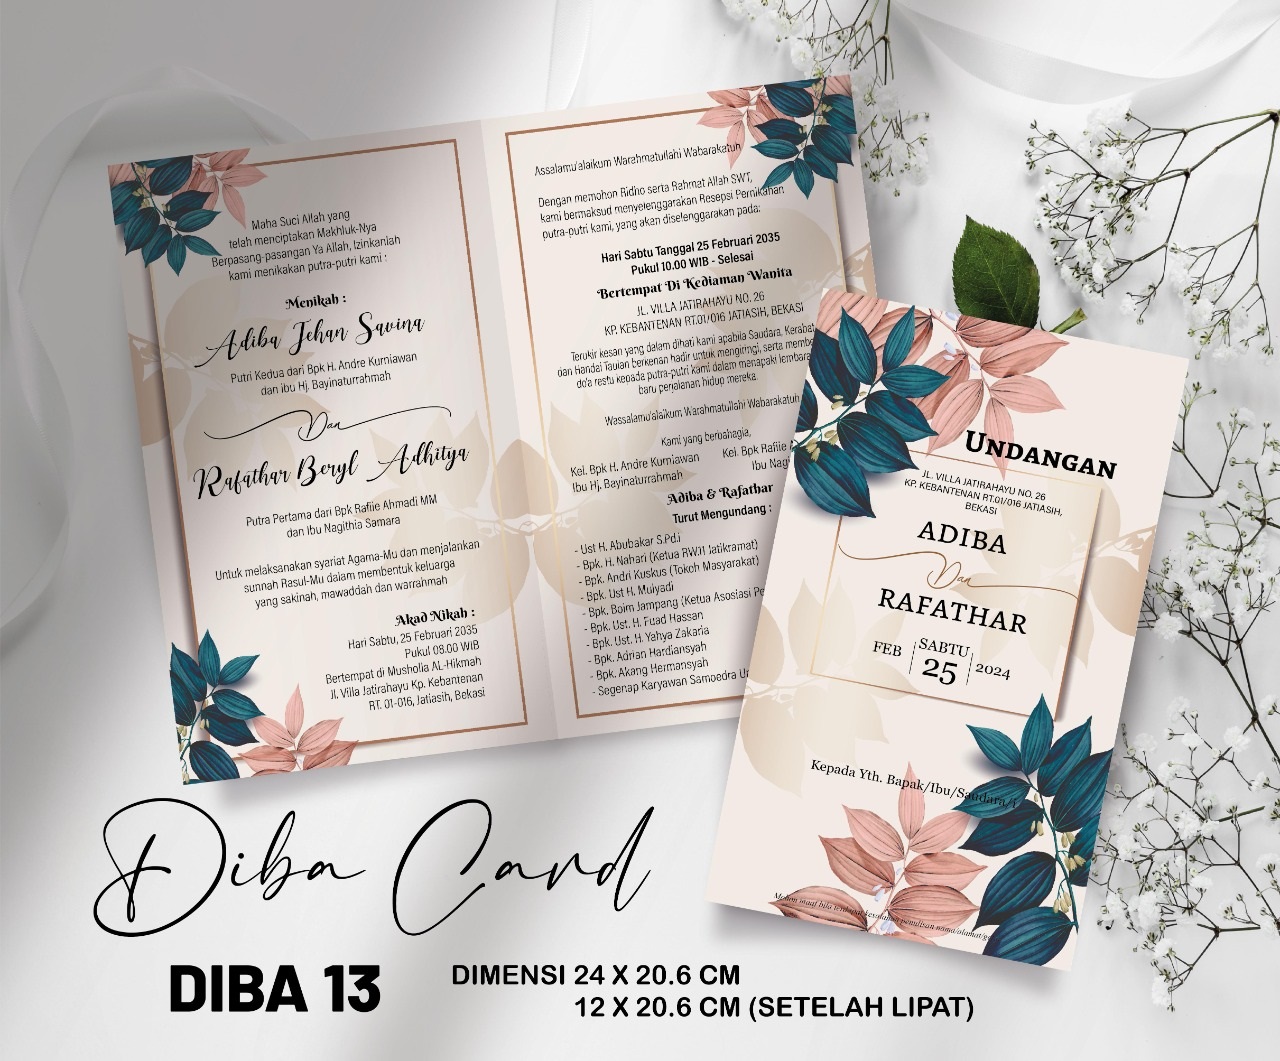 DIBA CARD 13 